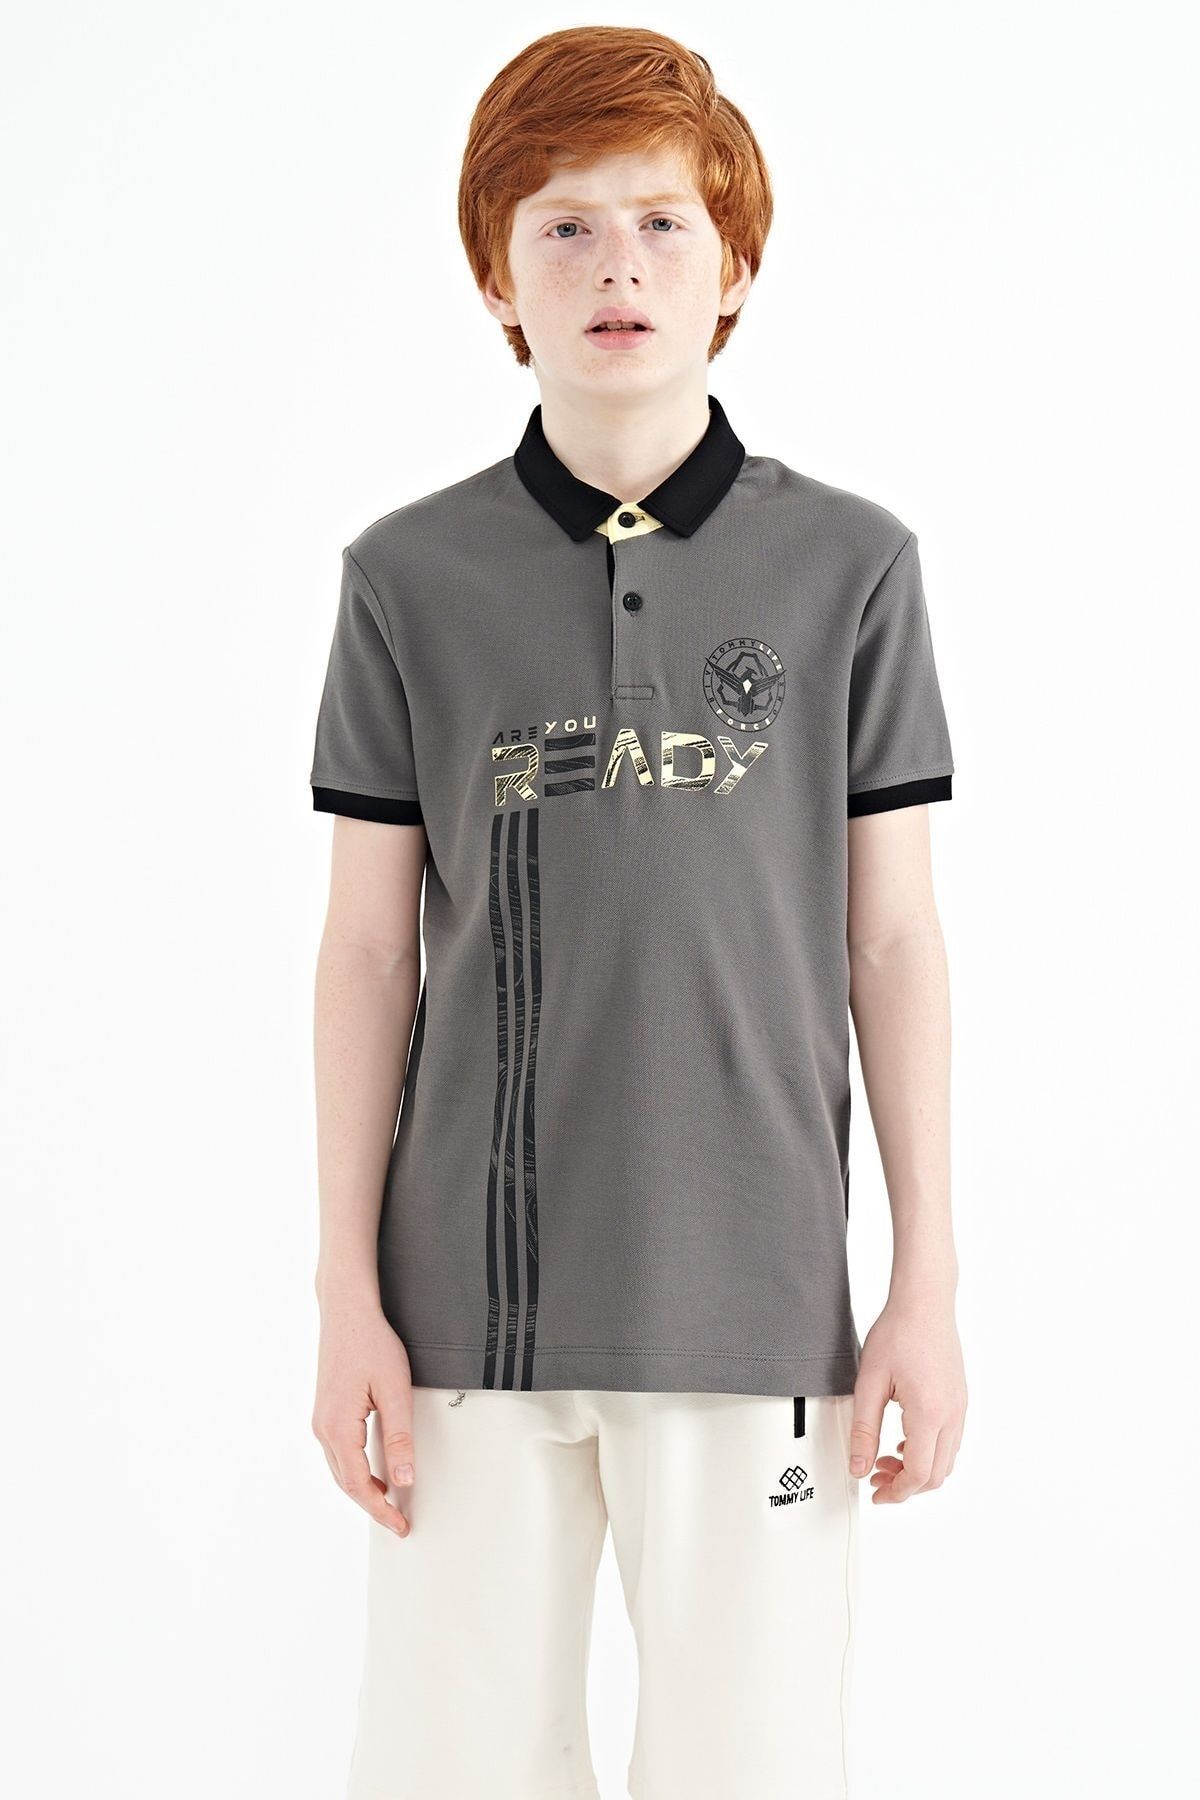 TOMMY LIFE Koyu Gri Yazı Baskı Desenli Standart Kalıp Polo Yaka Erkek Çocuk T-shirt - 11143